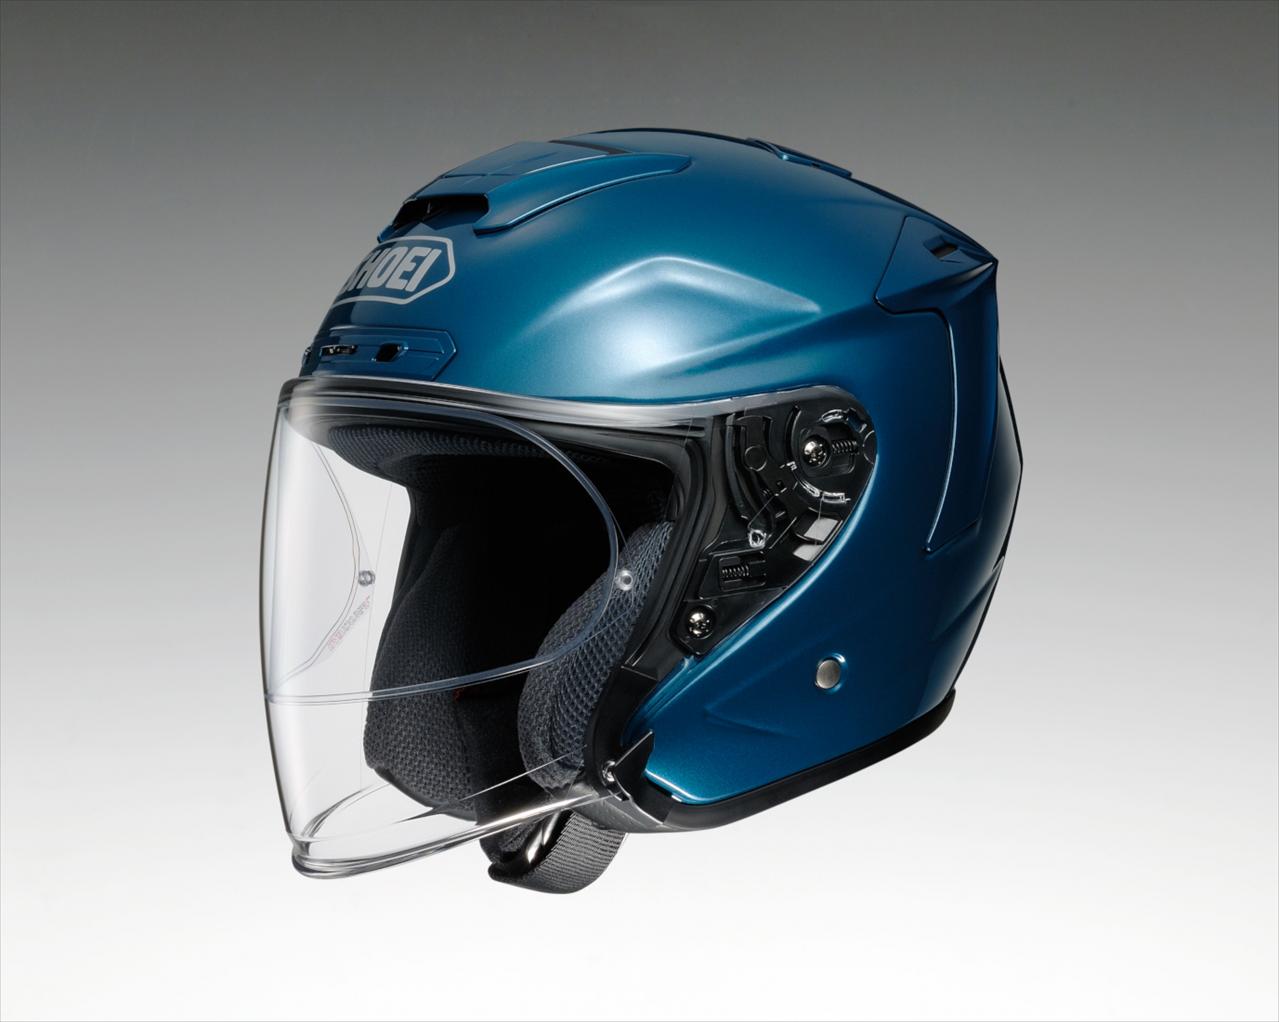 SHOEIスポーツジェットヘルメットの最高峰モデル「J-FORCE Ⅳ」に高級 